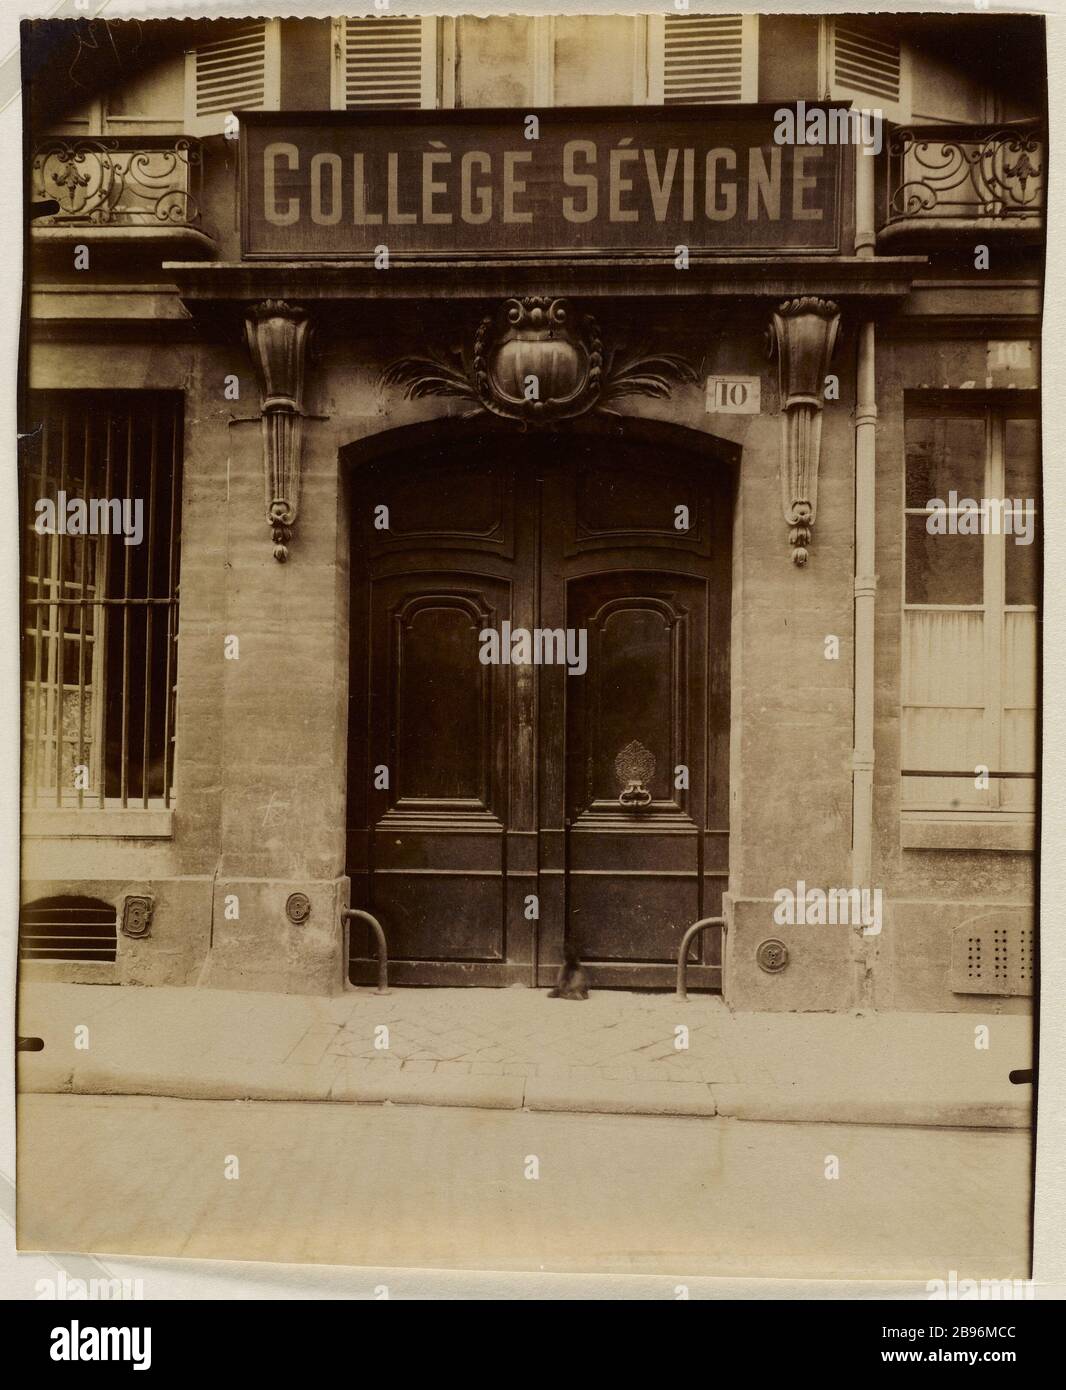 PORTE DE L'HÔTEL MACHELET VELYE (ANCIEN COLLÈGE SEVIGNNE), 10 RUE DE CONDE, 6ÈME ARRONDISSEMENT, PARIS porte, hôtel Machelet de Velye (ancien collège Sévigné), 10 rue de Condé. Paris (VIème arr.), 1909. Photo d'Eugène Atget (1857-1927). Paris, musée Carnavalet. Banque D'Images